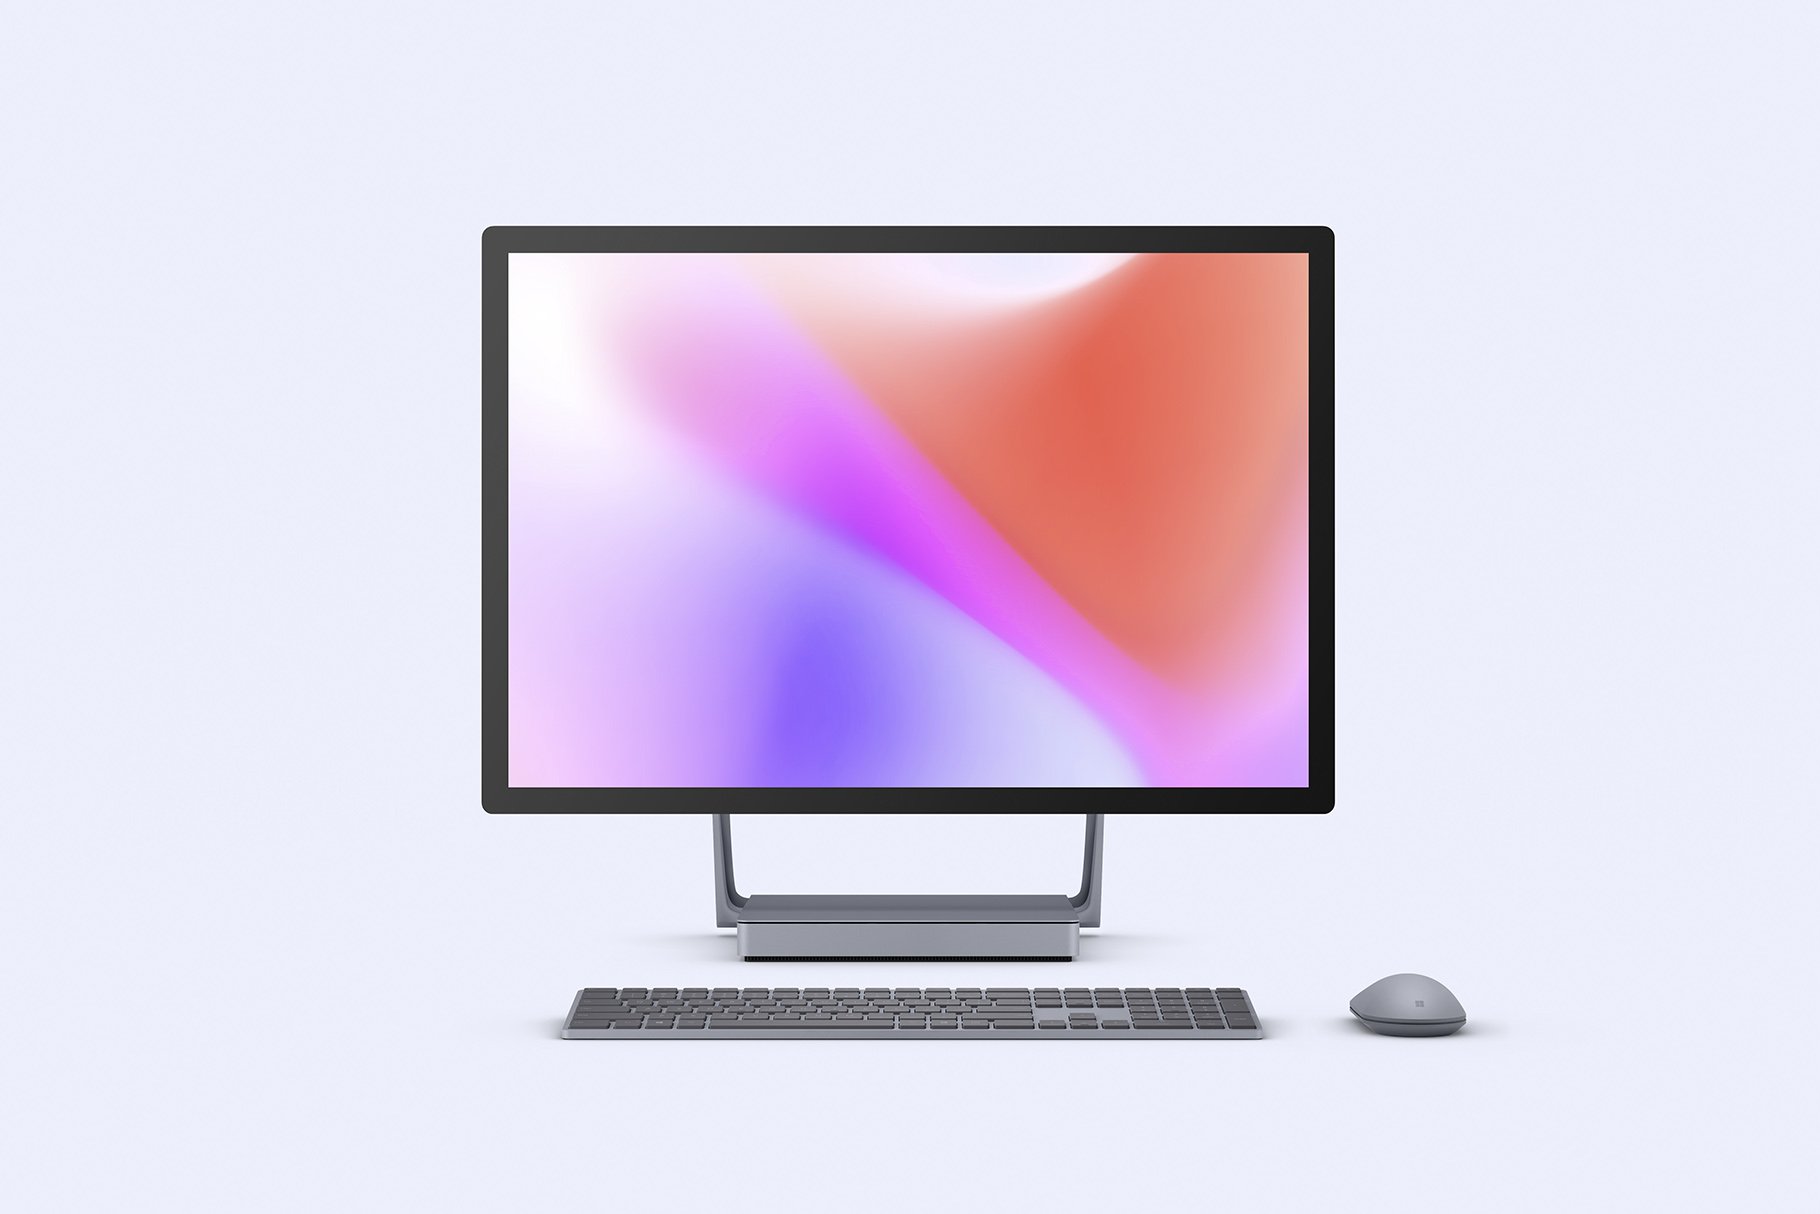 Desktop Surface Studio 2 - Mockups cover image.